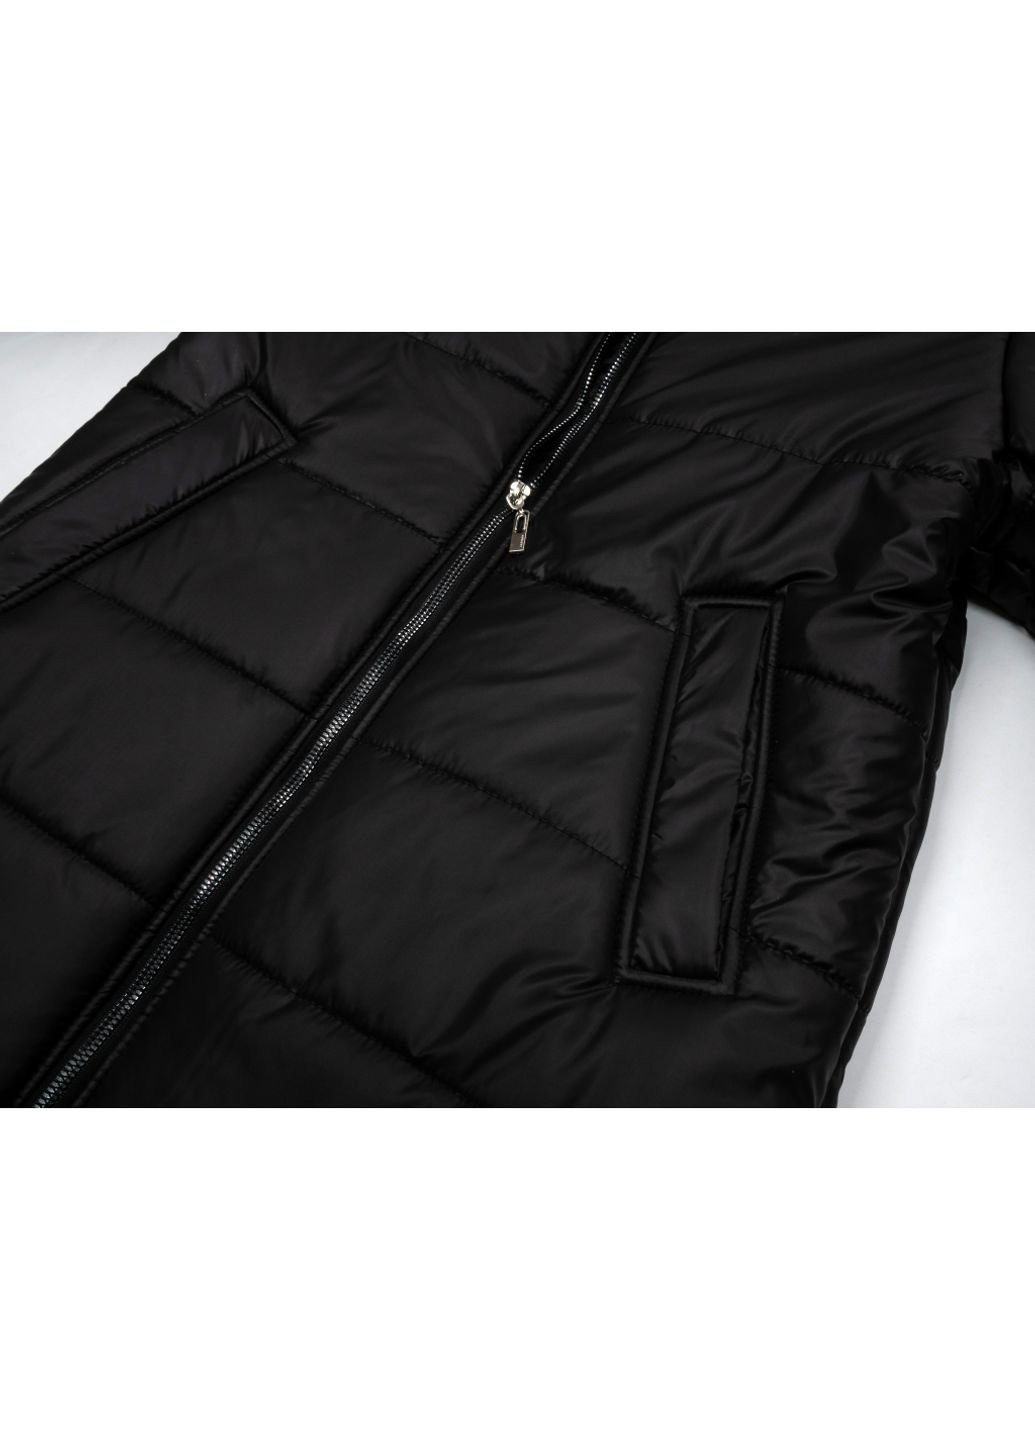 Черная демисезонная куртка пальто "donna" (21705-158g-black) Brilliant